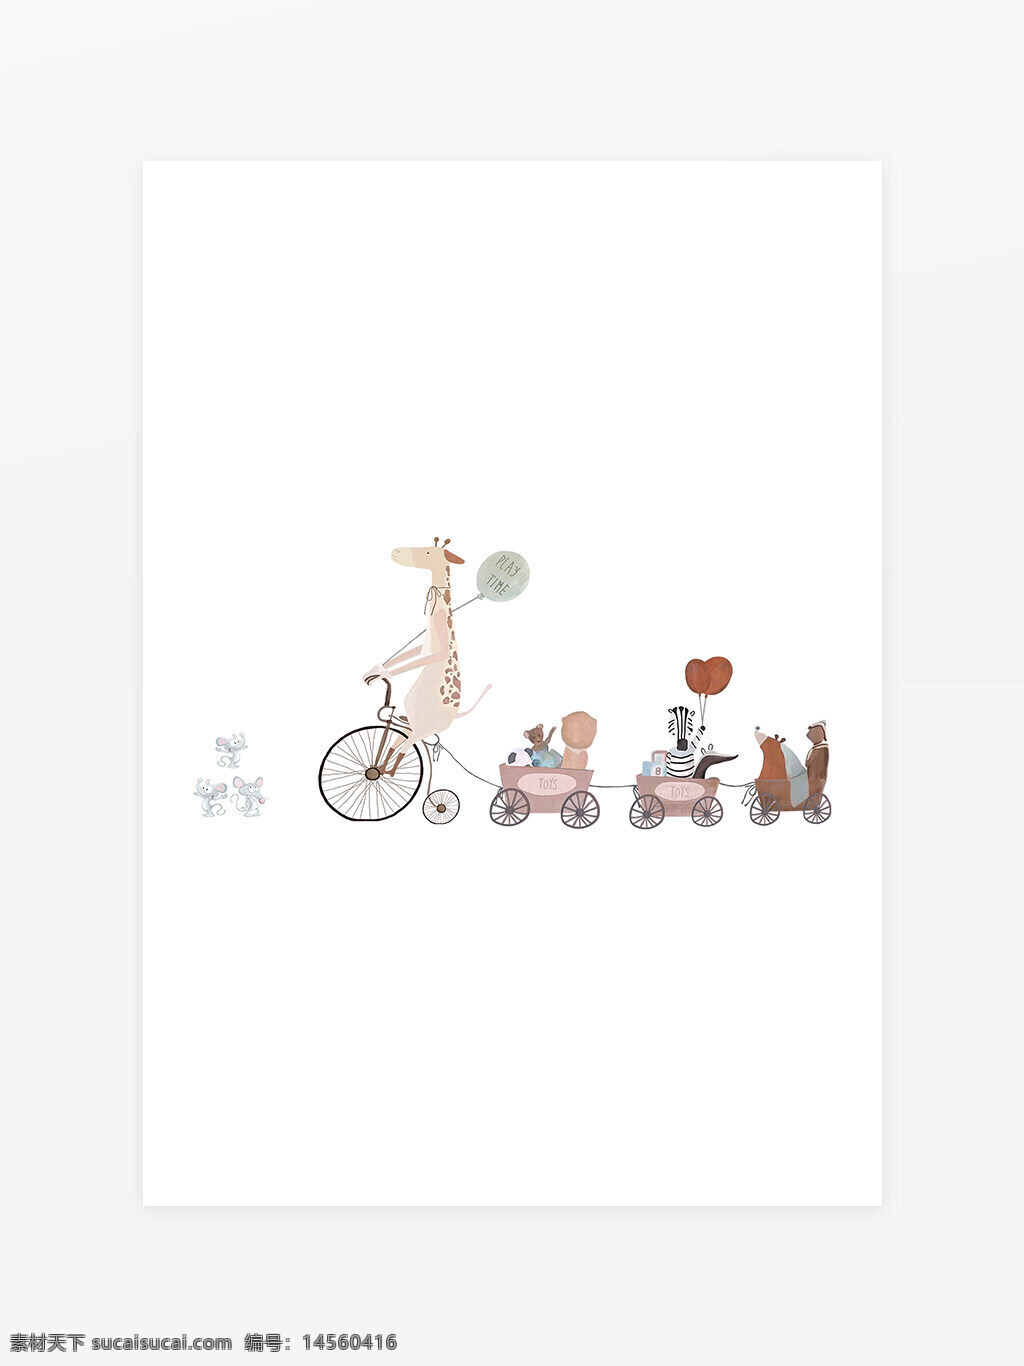 卡通动物元素 鹿 熊 老鼠 气球 自行车